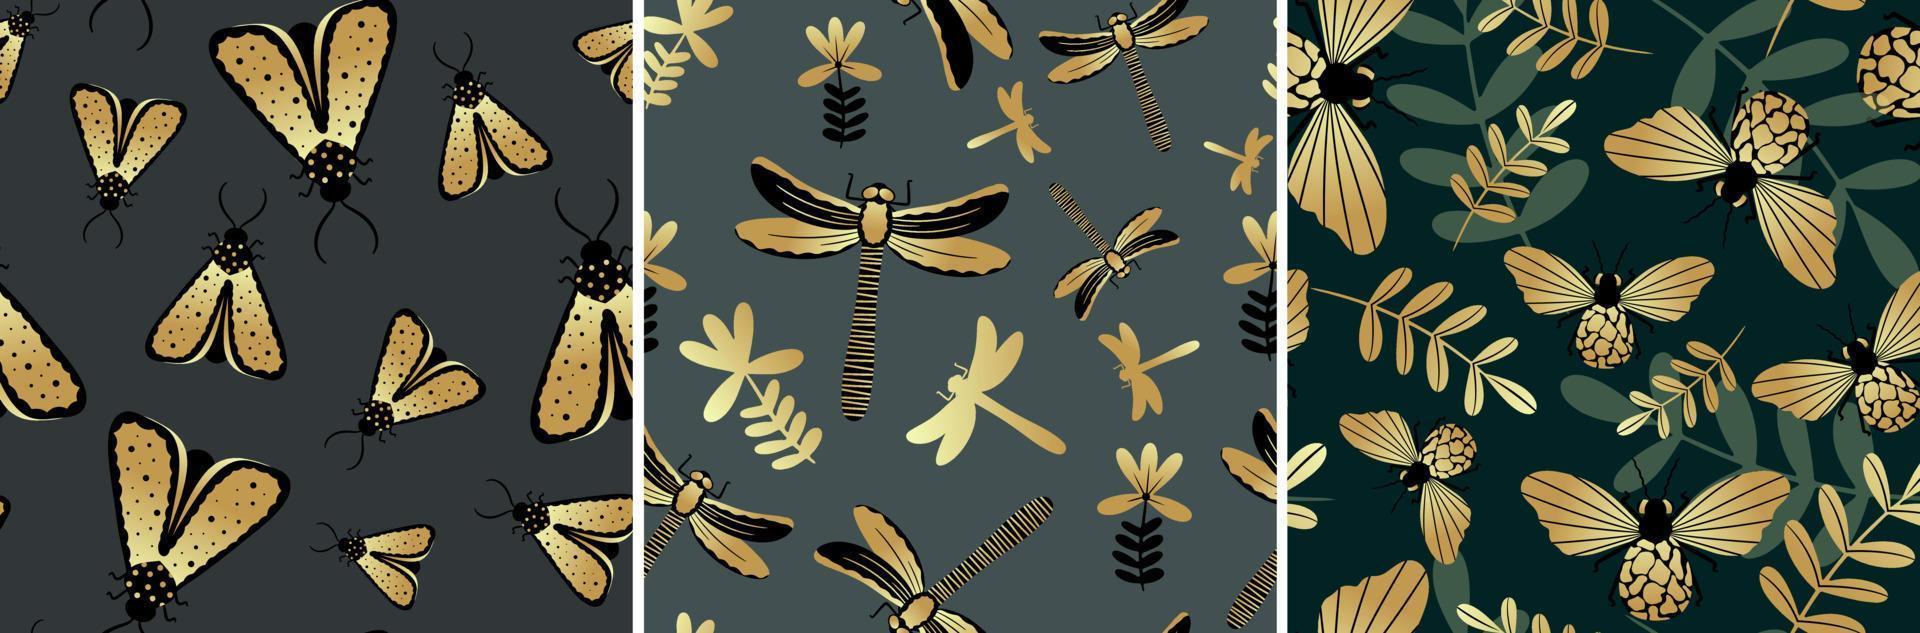 definir borboletas douradas e pretas e libélulas em fundo escuro com padrão sem emenda. ilustração vetorial para o design de tecidos, têxteis, roupas, quimonos, camisas masculinas, embalagens, papel de parede. vetor